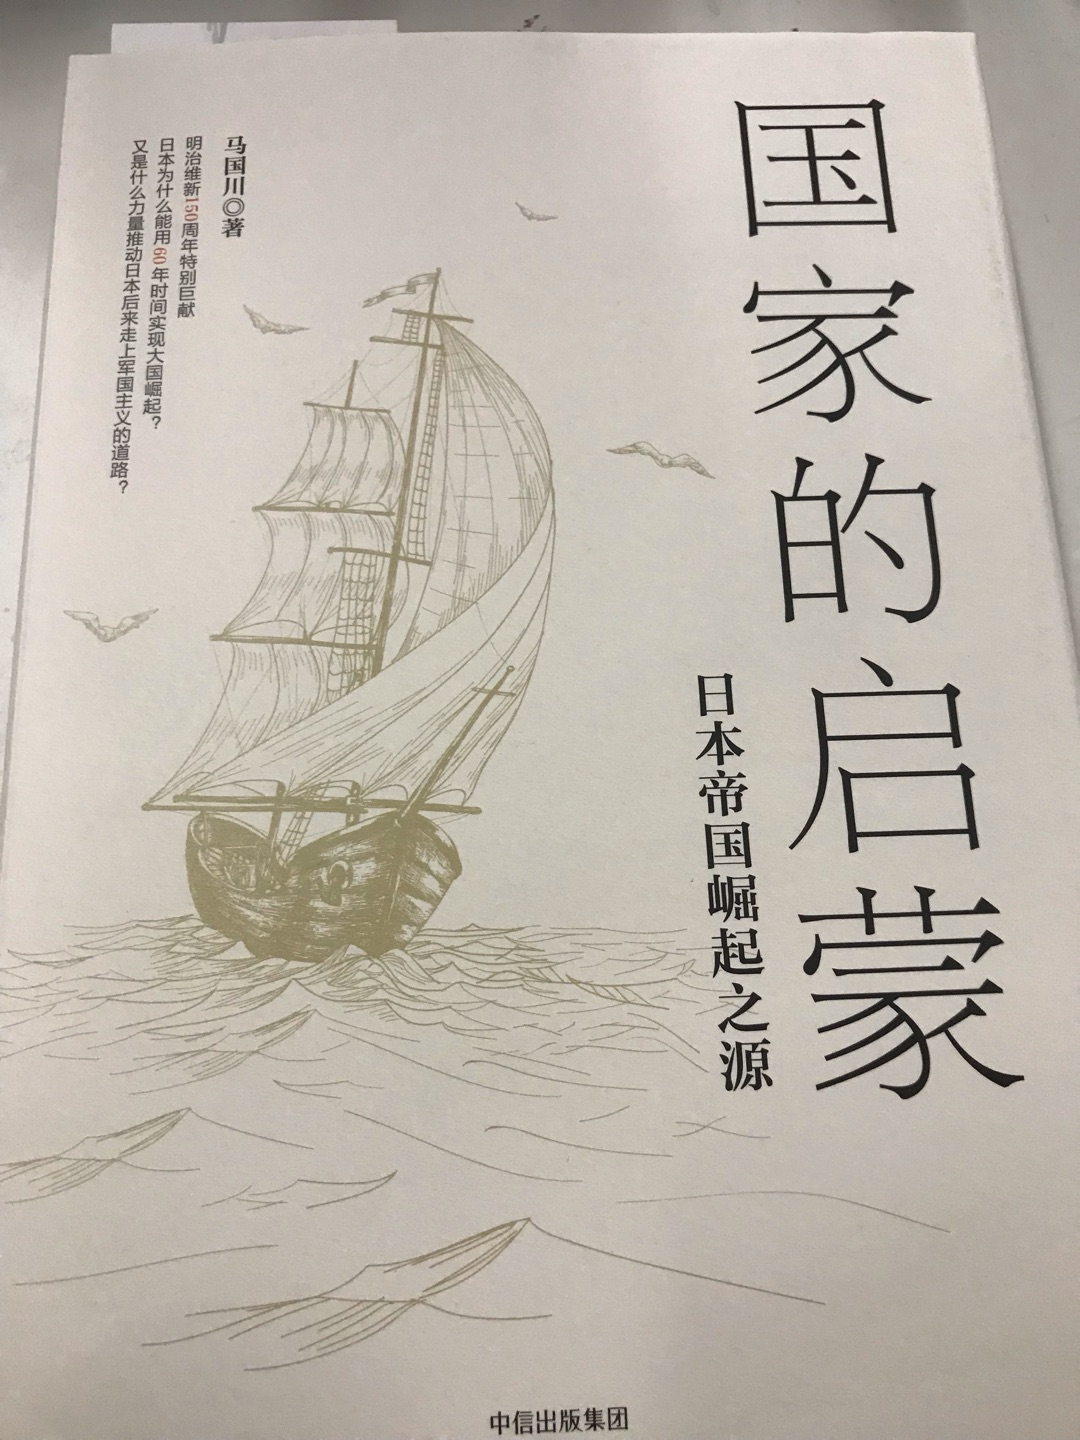 一直想买一本关于近代日本史的书，趁这次图书搞优惠活动就买了，送货很快。书的印刷和装帧也很好。